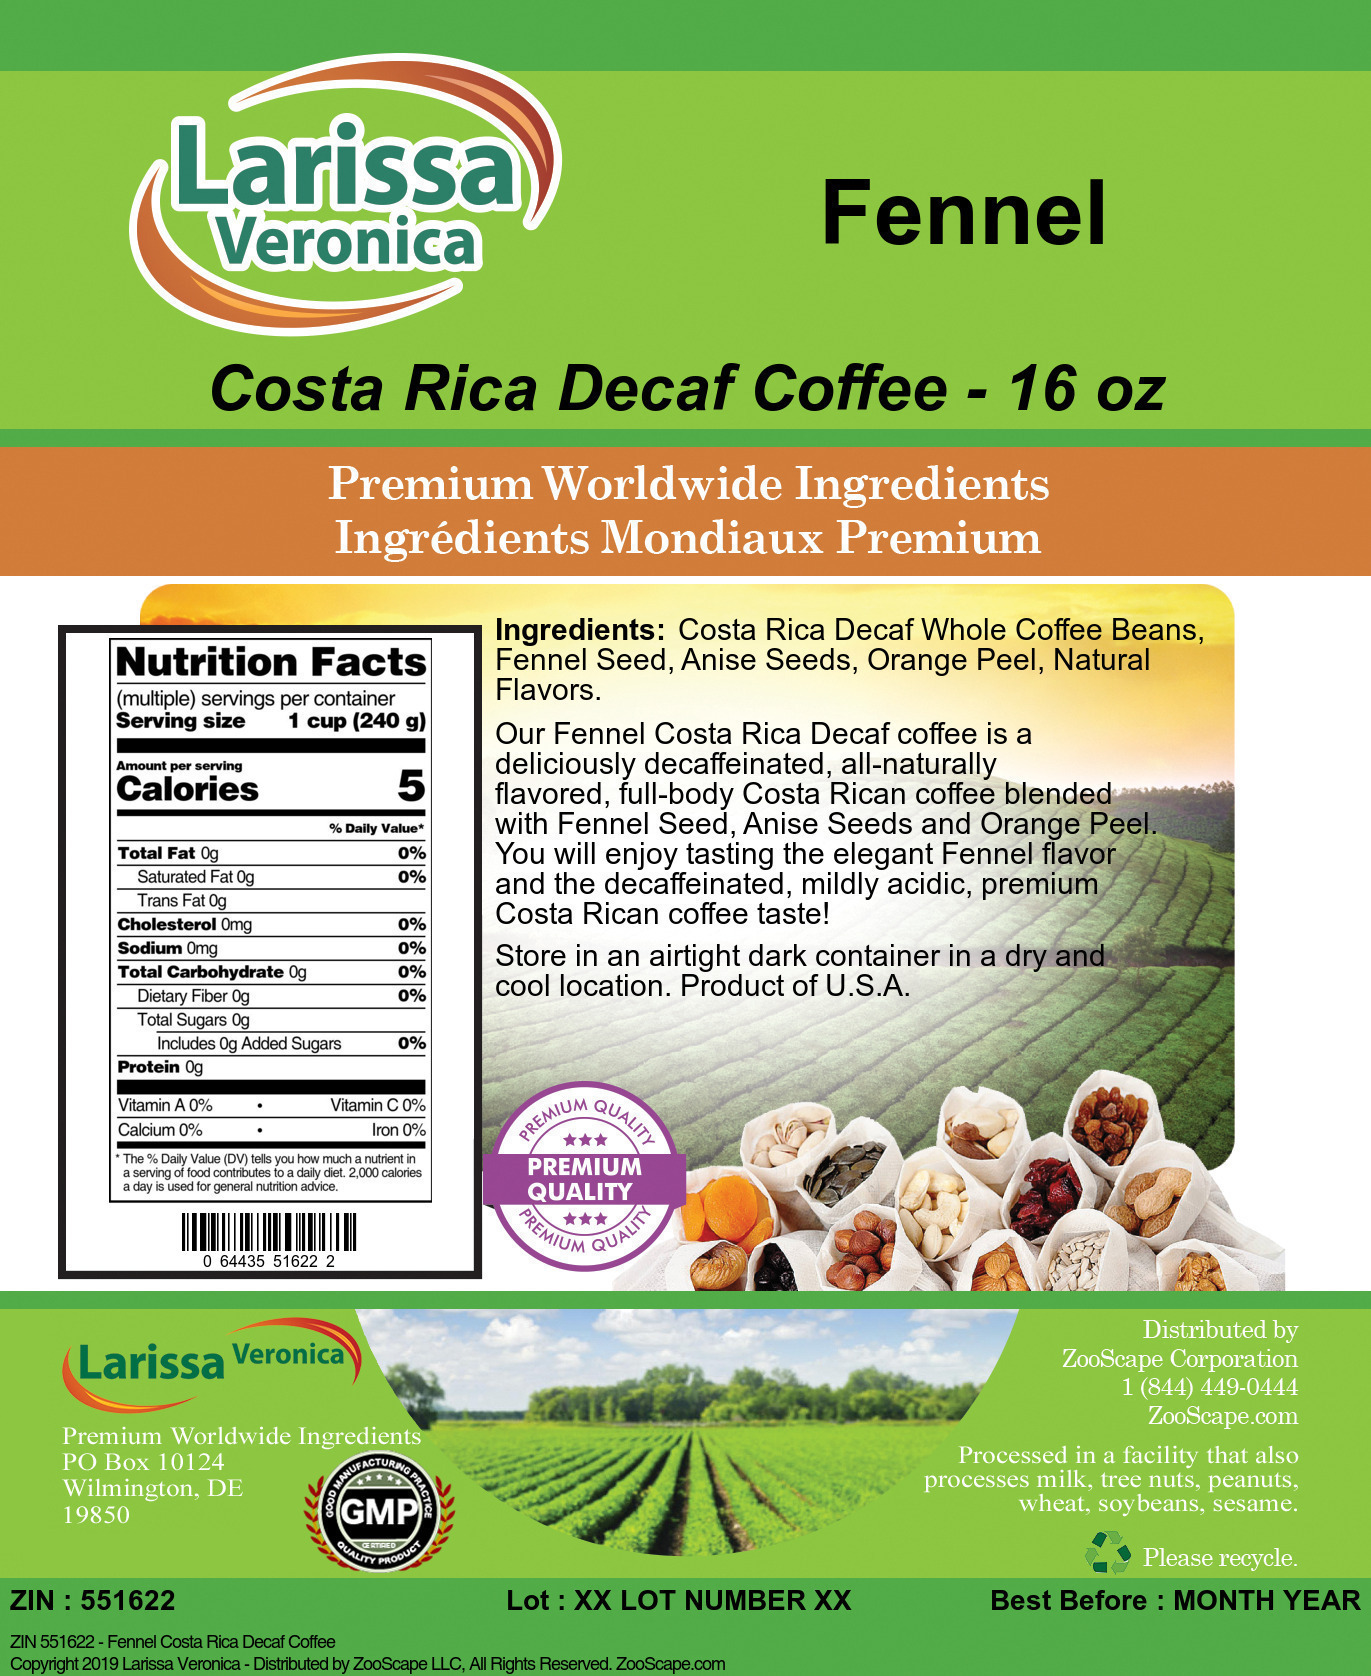 Fennel Costa Rica Decaf Coffee - Label